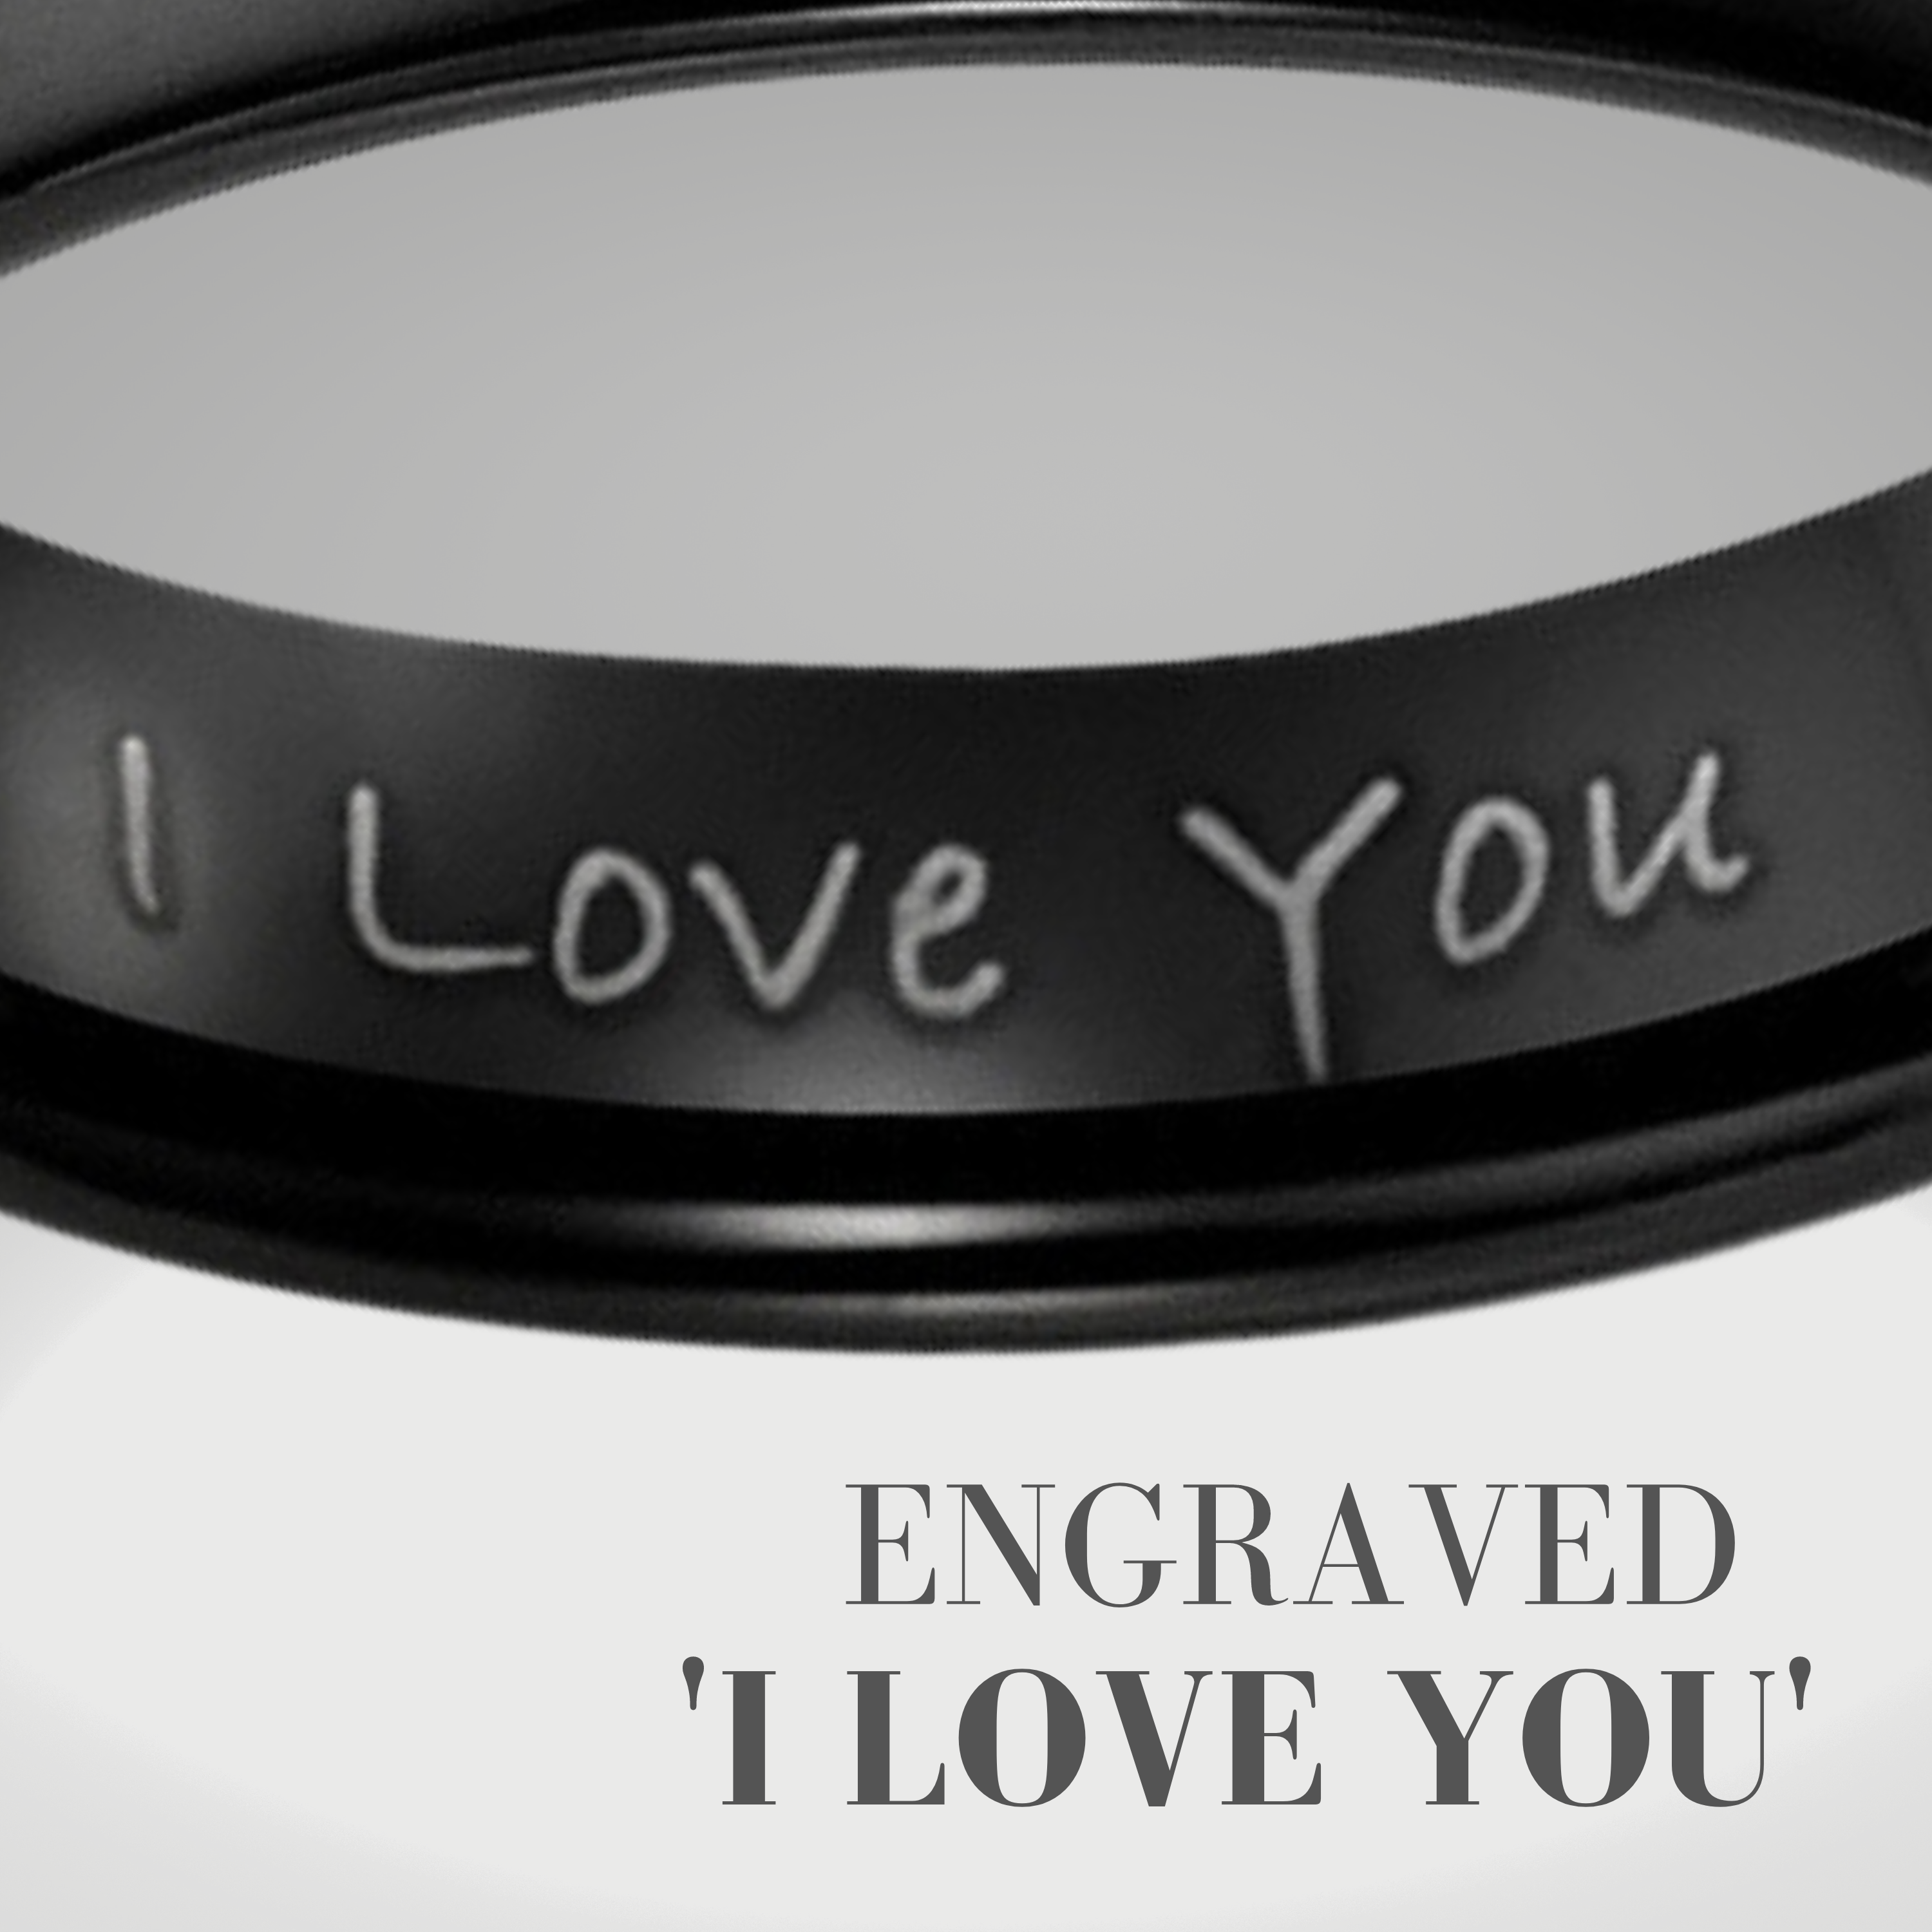 Men’s Engraved Ring - I Love You (Black) 6mm